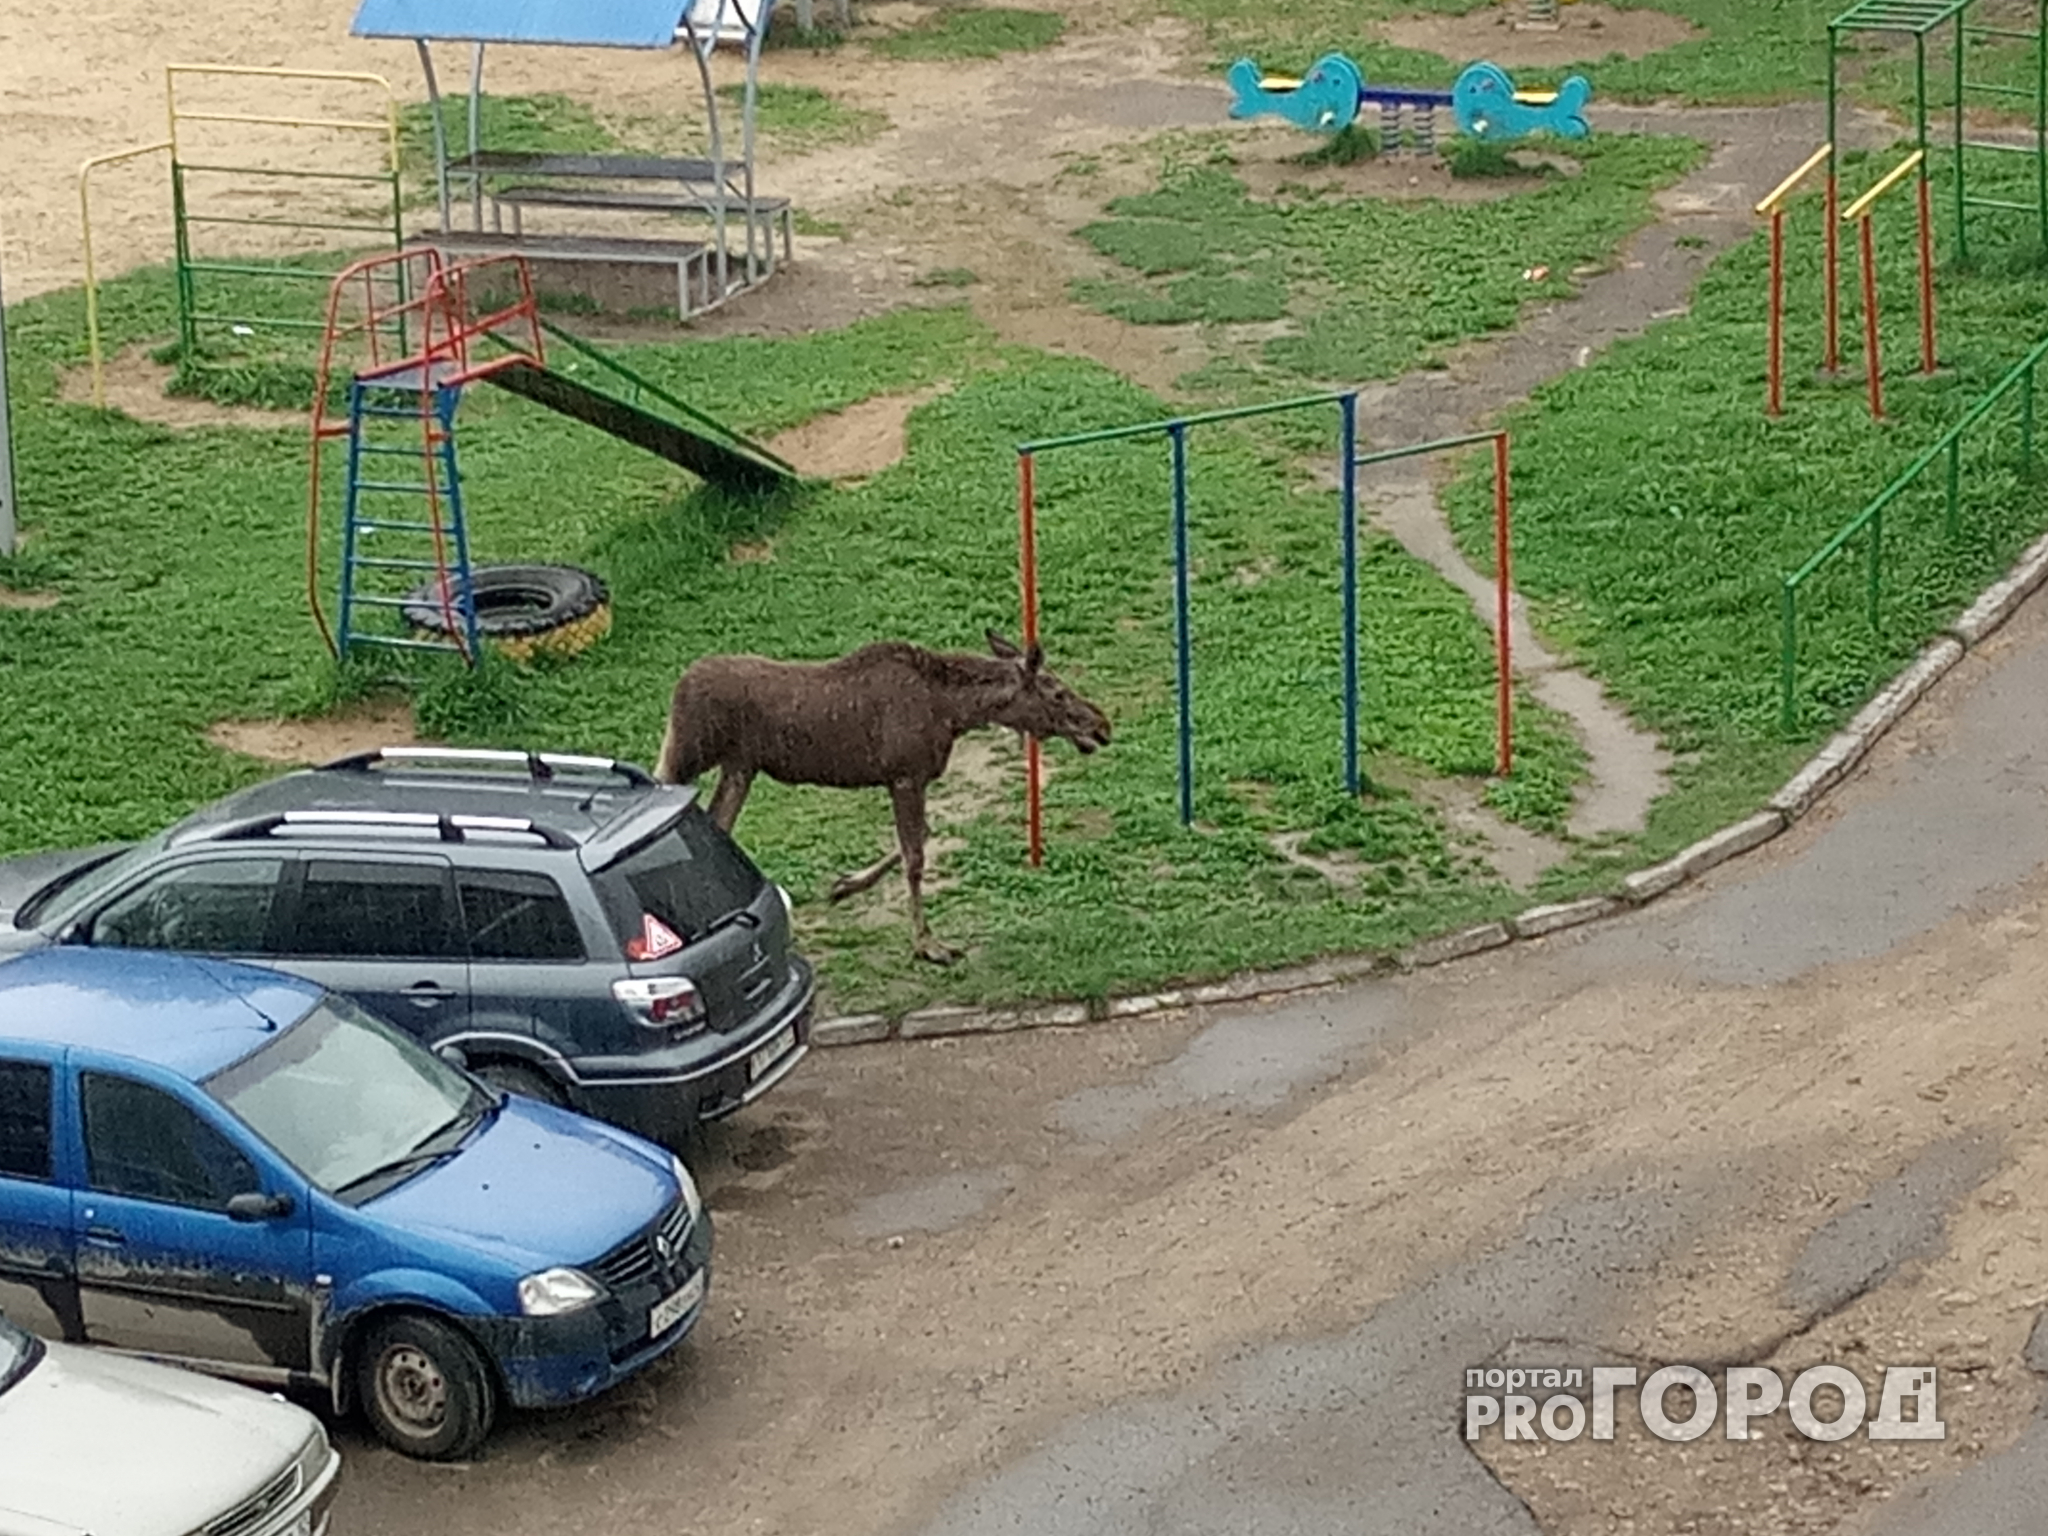 Молодой лось ходил по дворам Йошкар-Олы и заглядывал в припаркованные авто